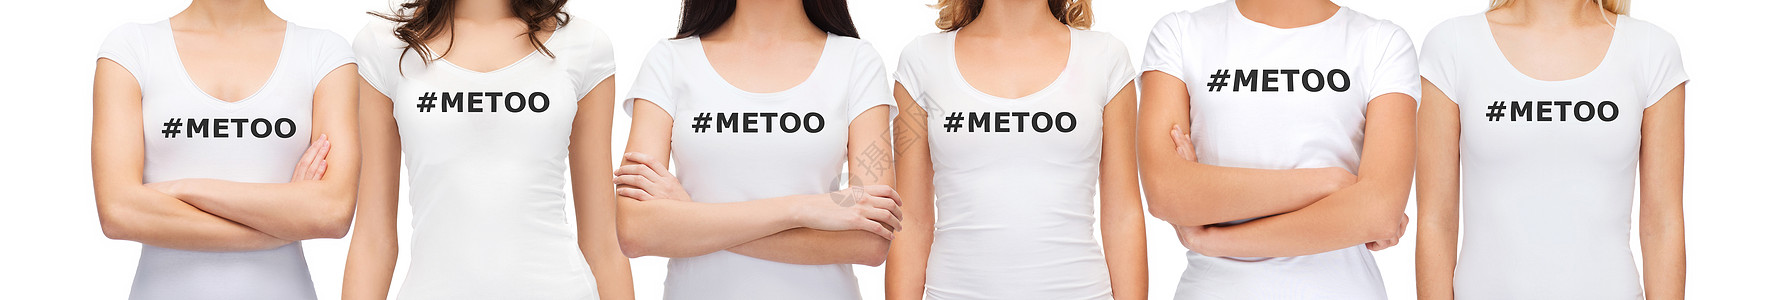 社会问题群穿着白色T恤的妇女,穿着METOO标签,声援反攻击骚扰的运动群穿着印METOO标签的T恤的妇女图片